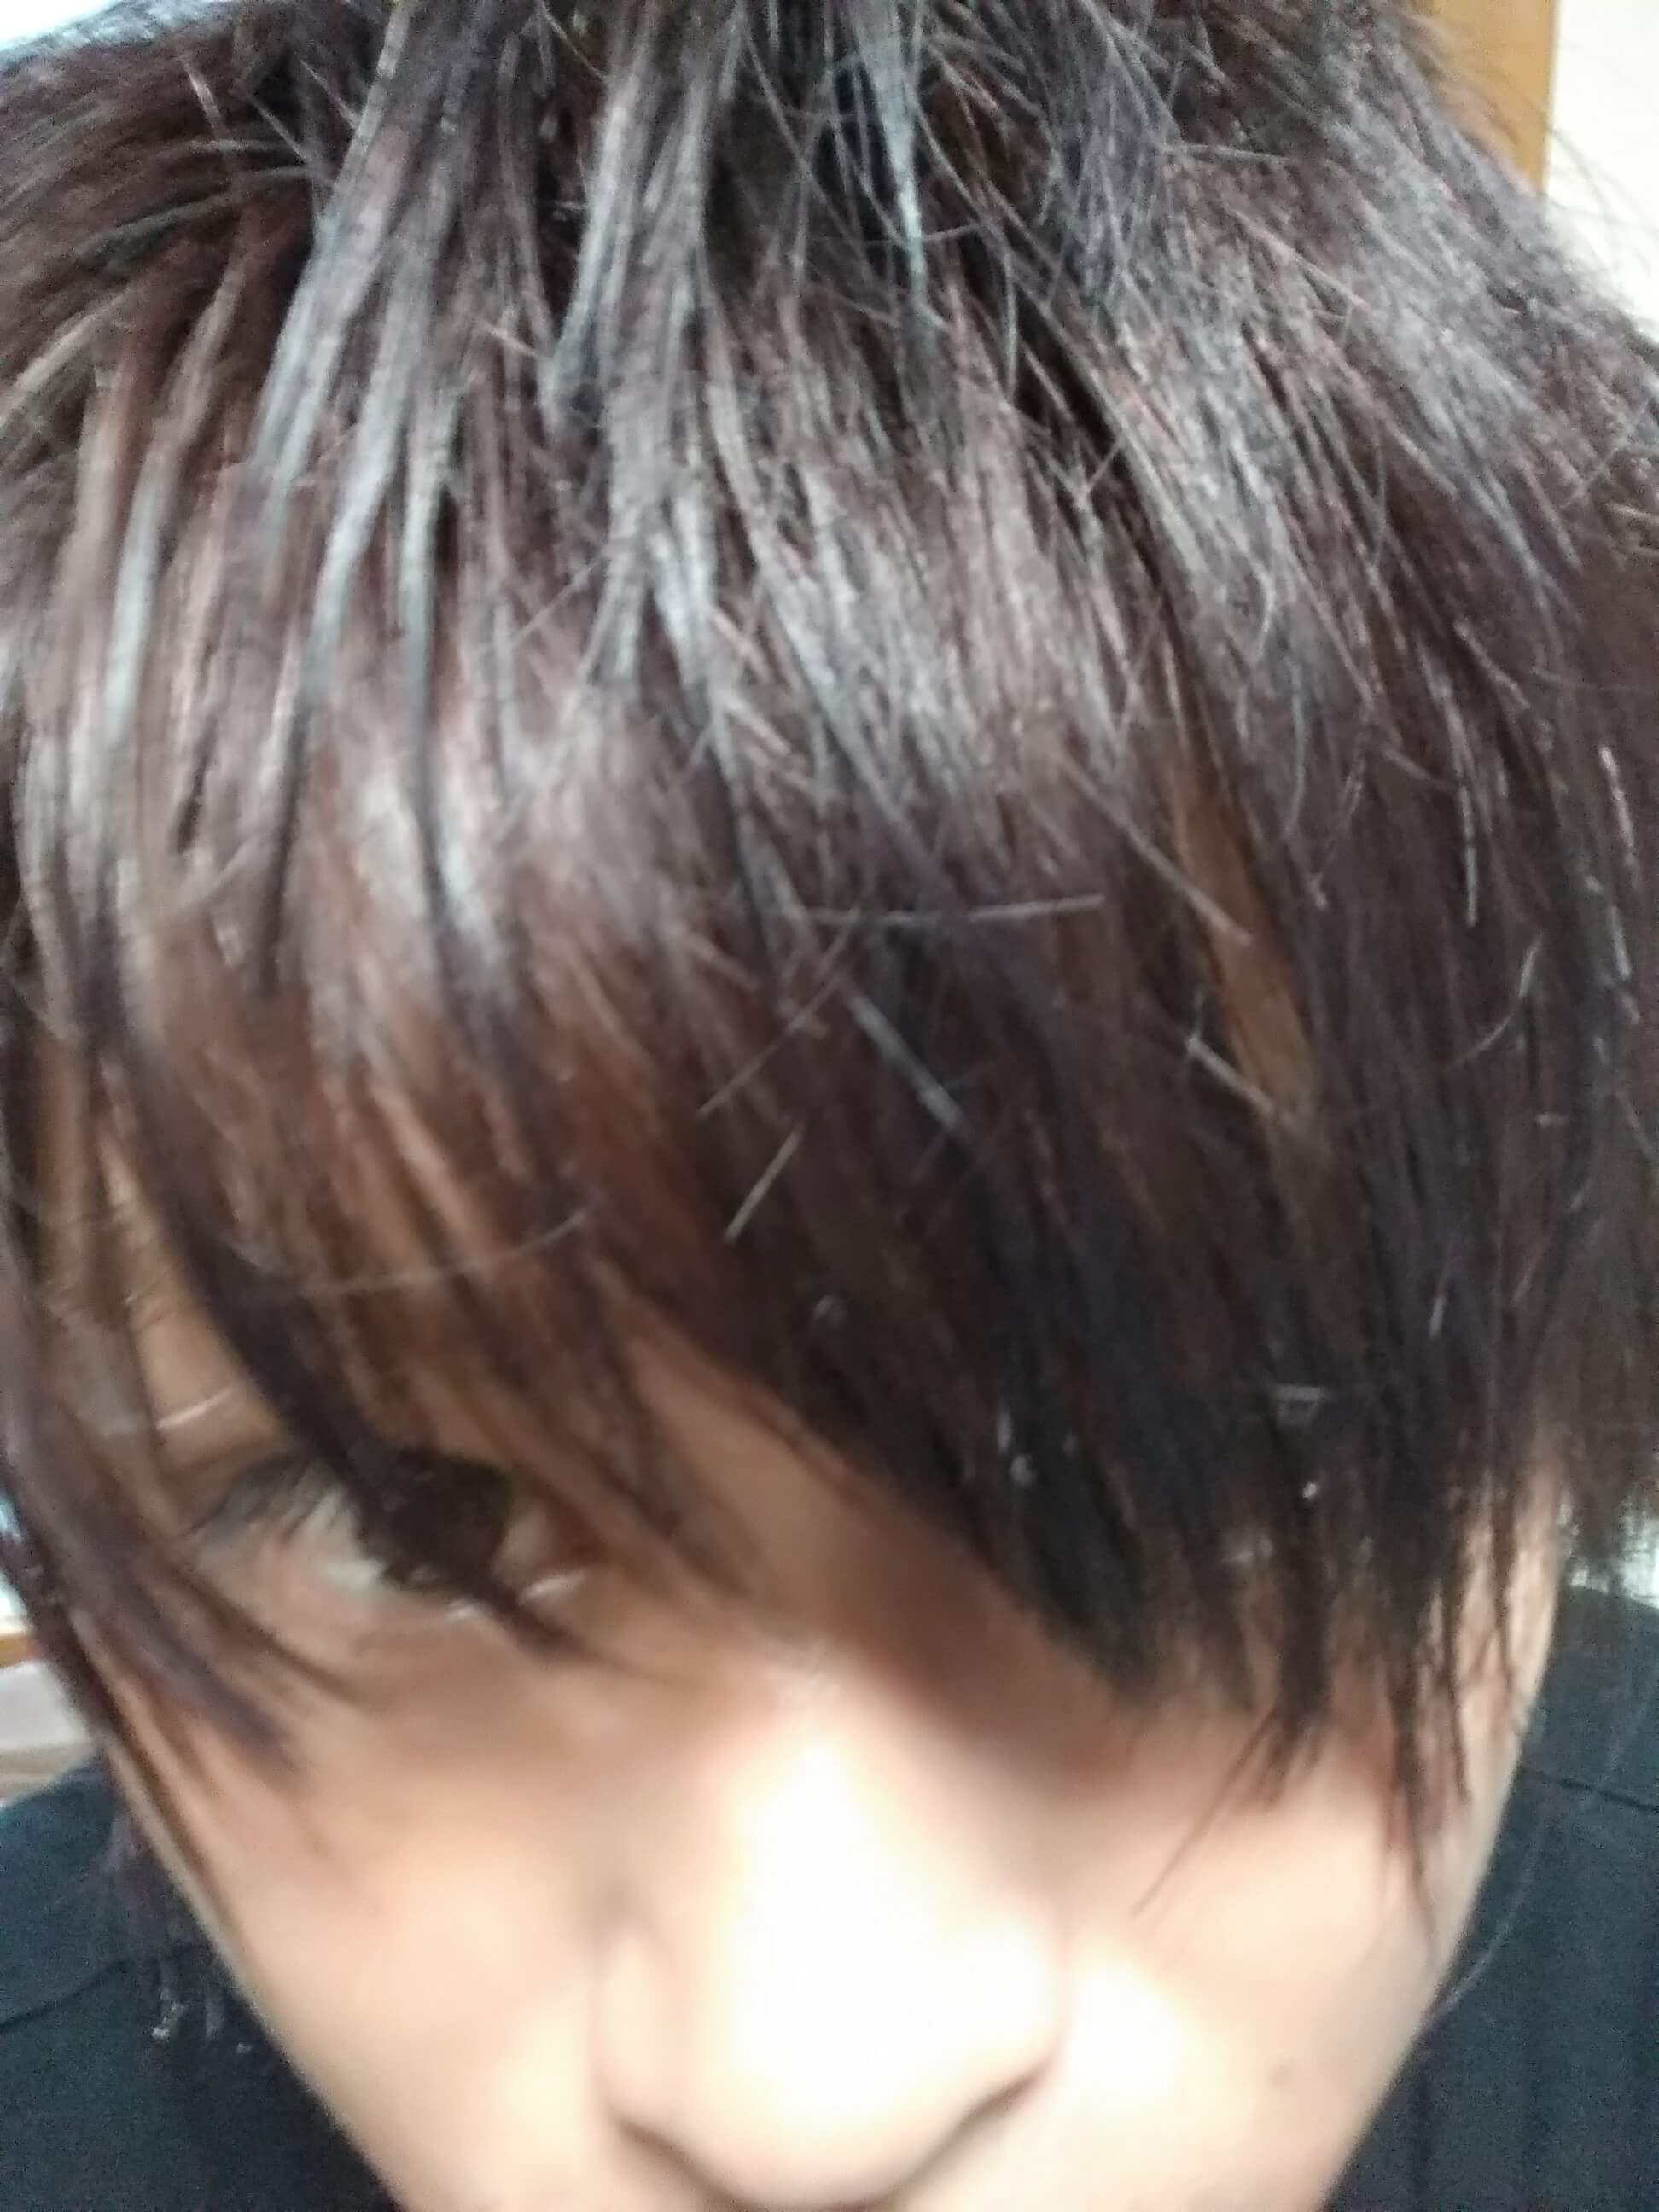 温度で髪色が変わるヘアカラー Fire がすごい 日本でもアマゾンで販売開始 桑原淳 Junkuwabara 旅人美容師世界一周1000人 カット 超超エリート株式会社代表